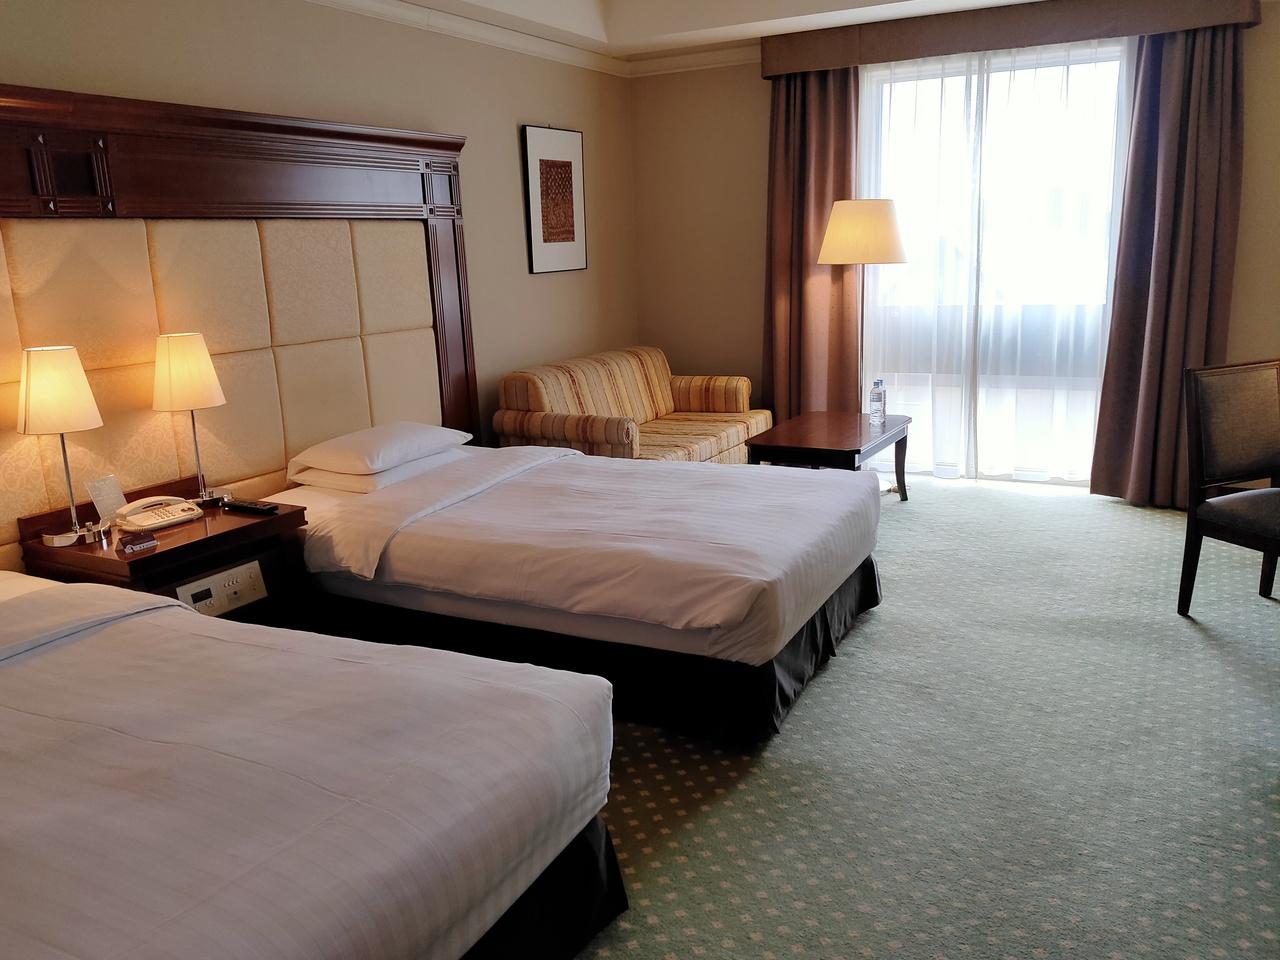 札幌のホテルのおすすめの場所20選　17位:プレミアホテル-TSUBAKI-札幌